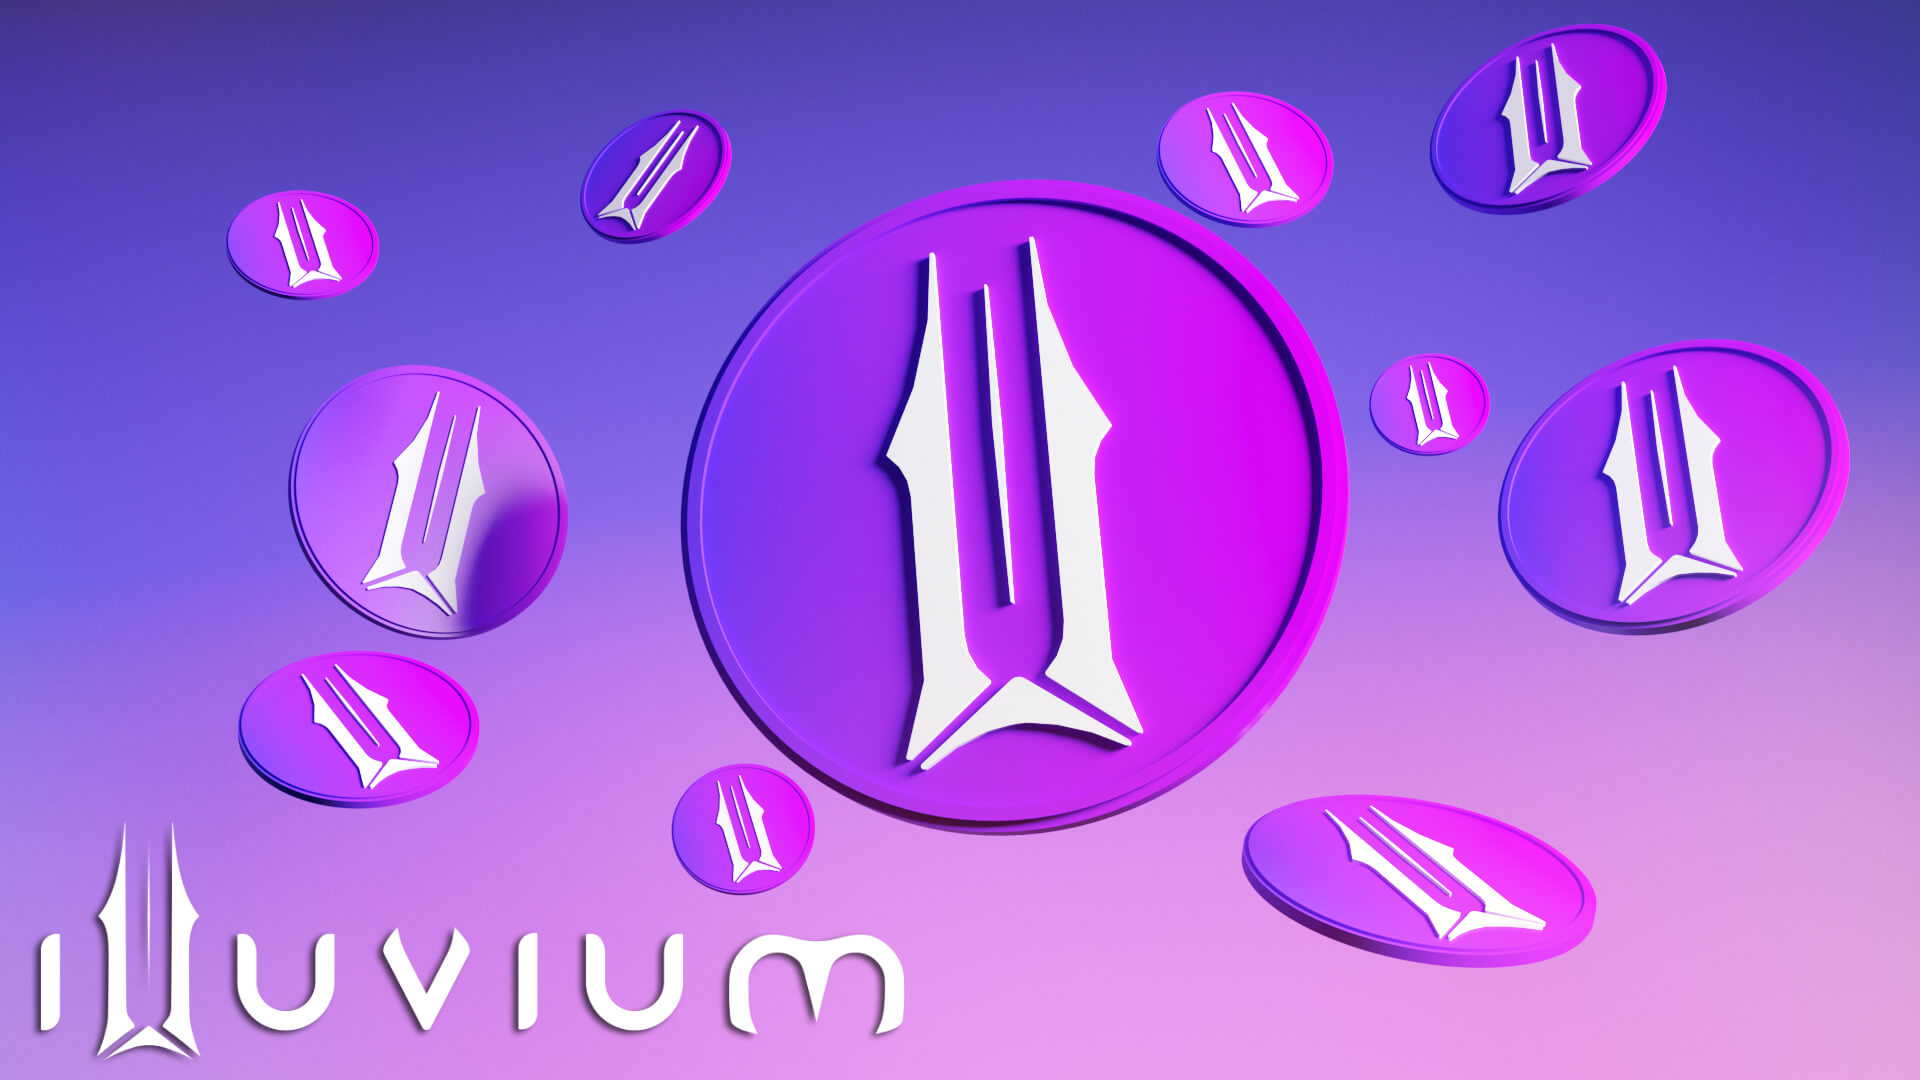 Illuvium-1-1.jpg